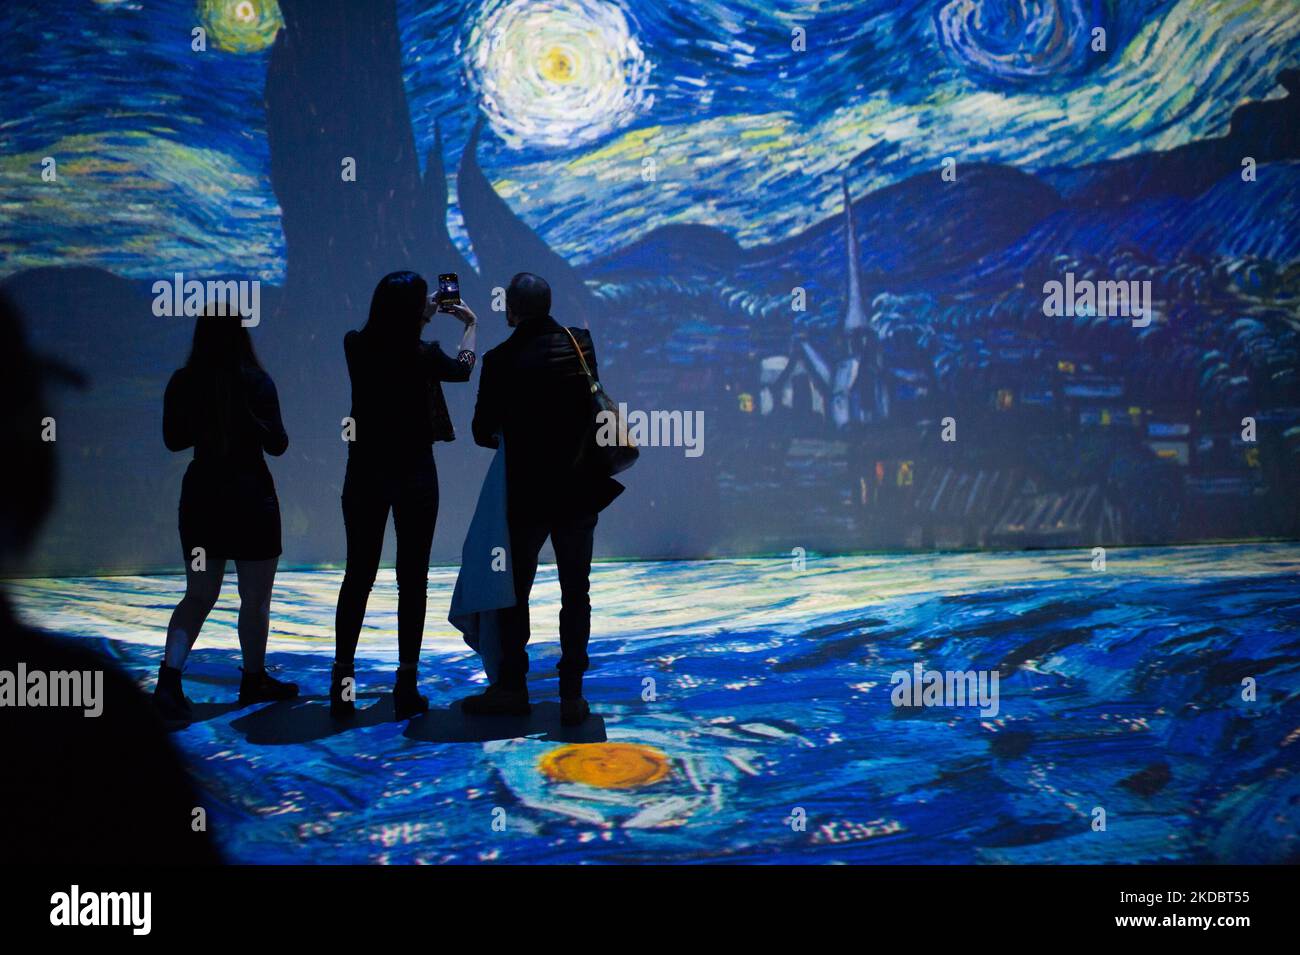 La gente partecipa alla coinvolgente mostra "Beyond Van Gogh" di Vincent Van Gogh, che raccoglie i suoi pezzi d'arte più importanti, a Bogotà, Colombia, 9 giugno 2022. (Foto di Sebastian Barros/NurPhoto) Foto Stock